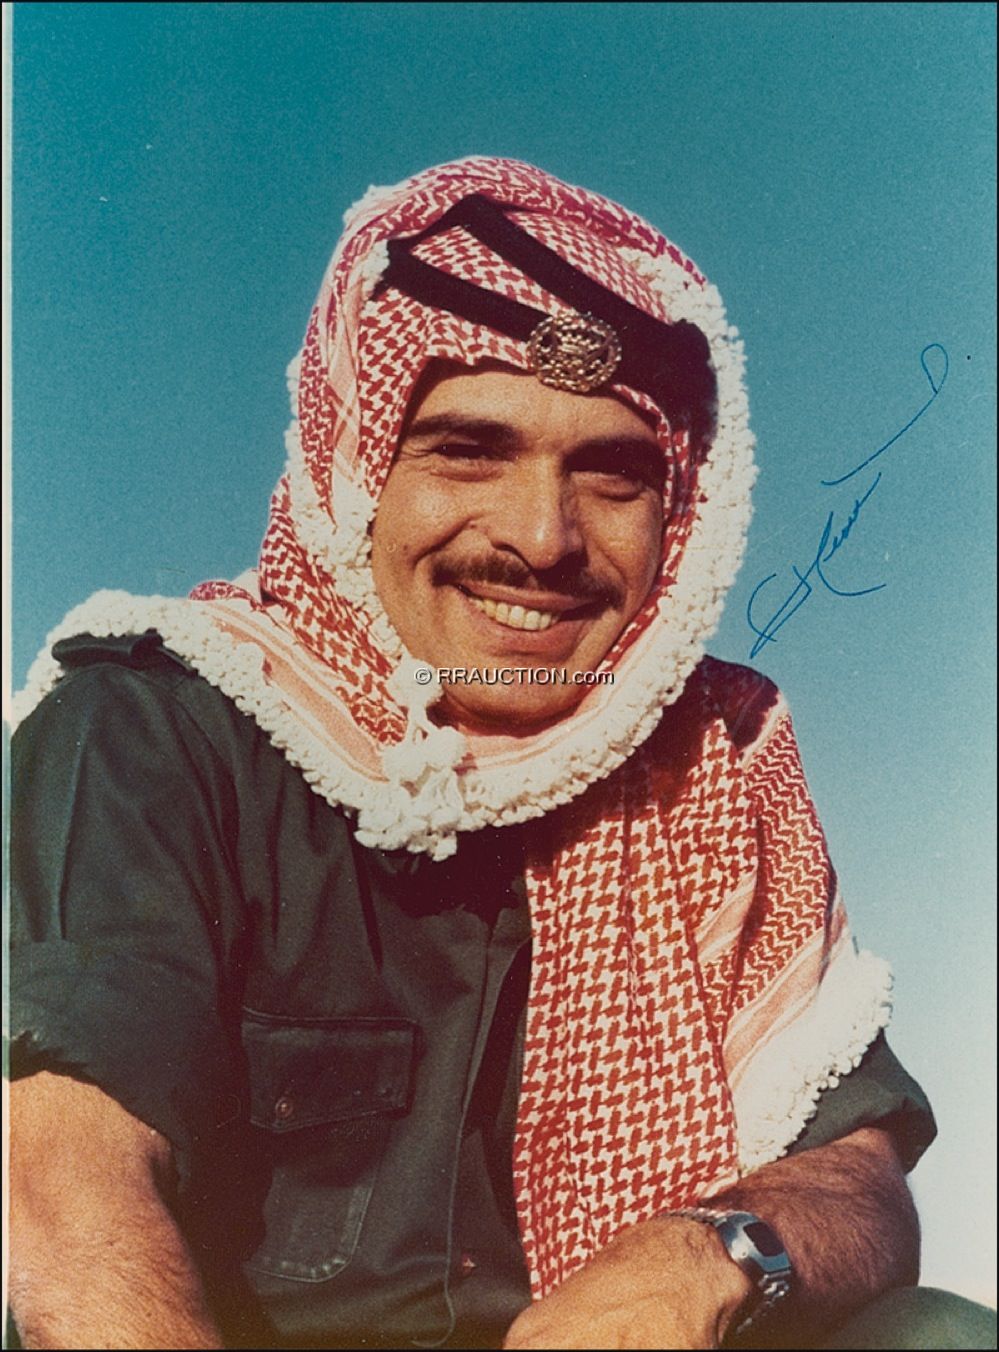 Lot #306 King Hussein of Jordan